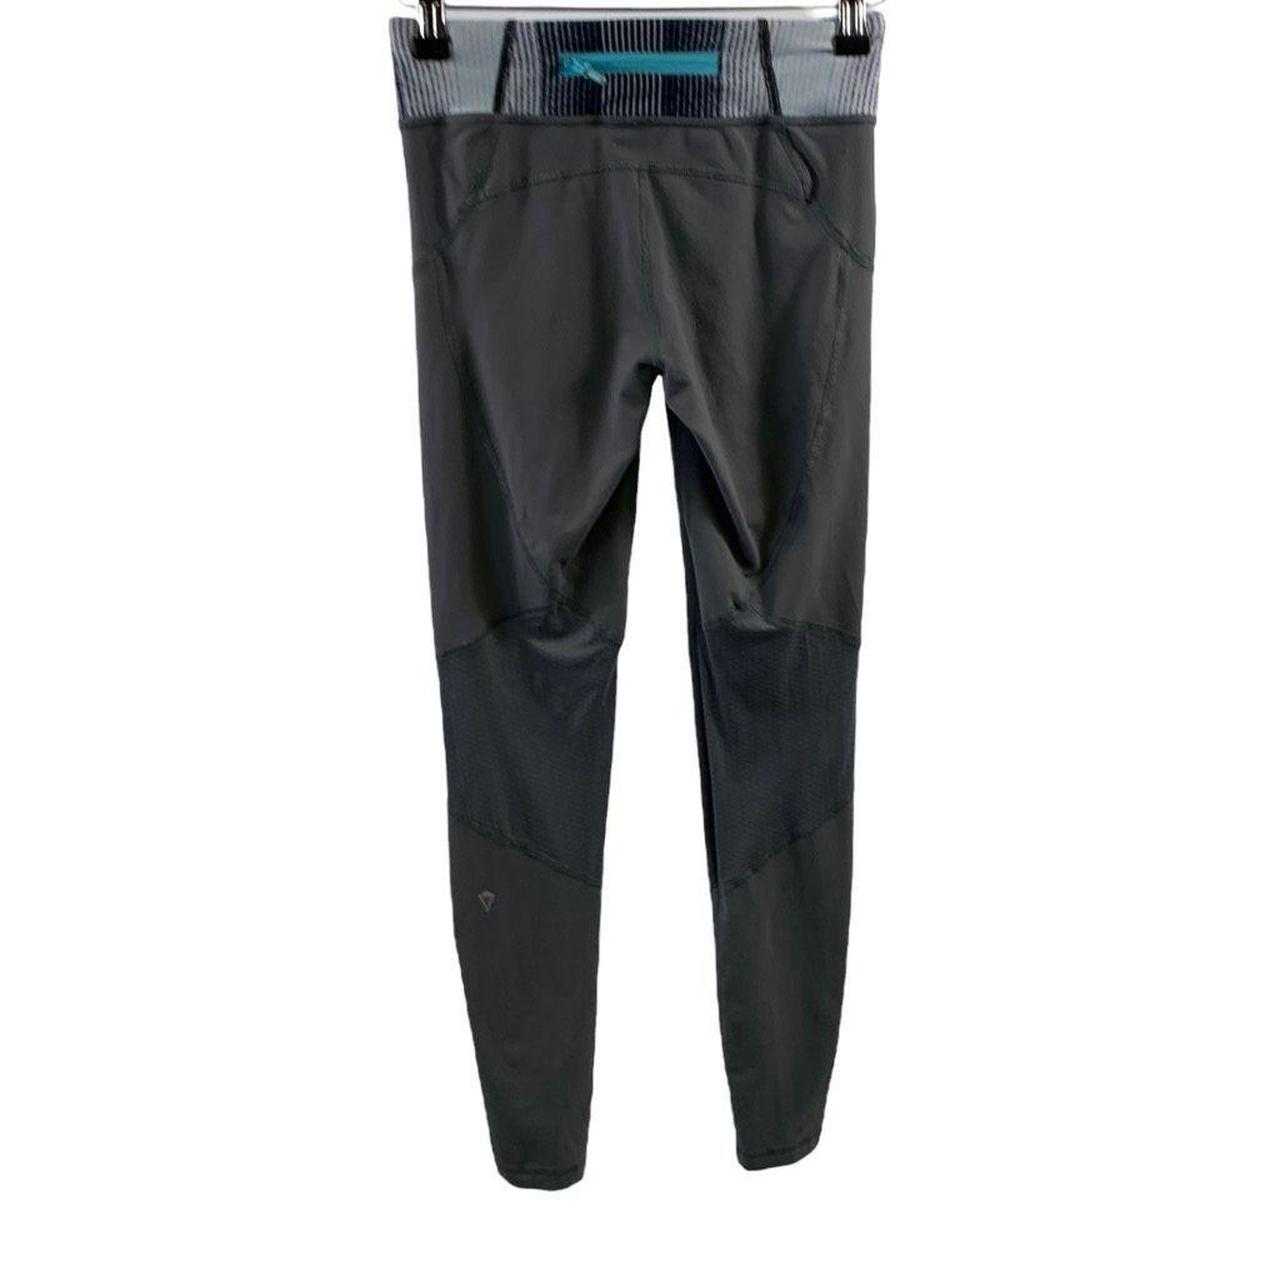 Full length gray Ivivva leggings with blue, purple, - Depop